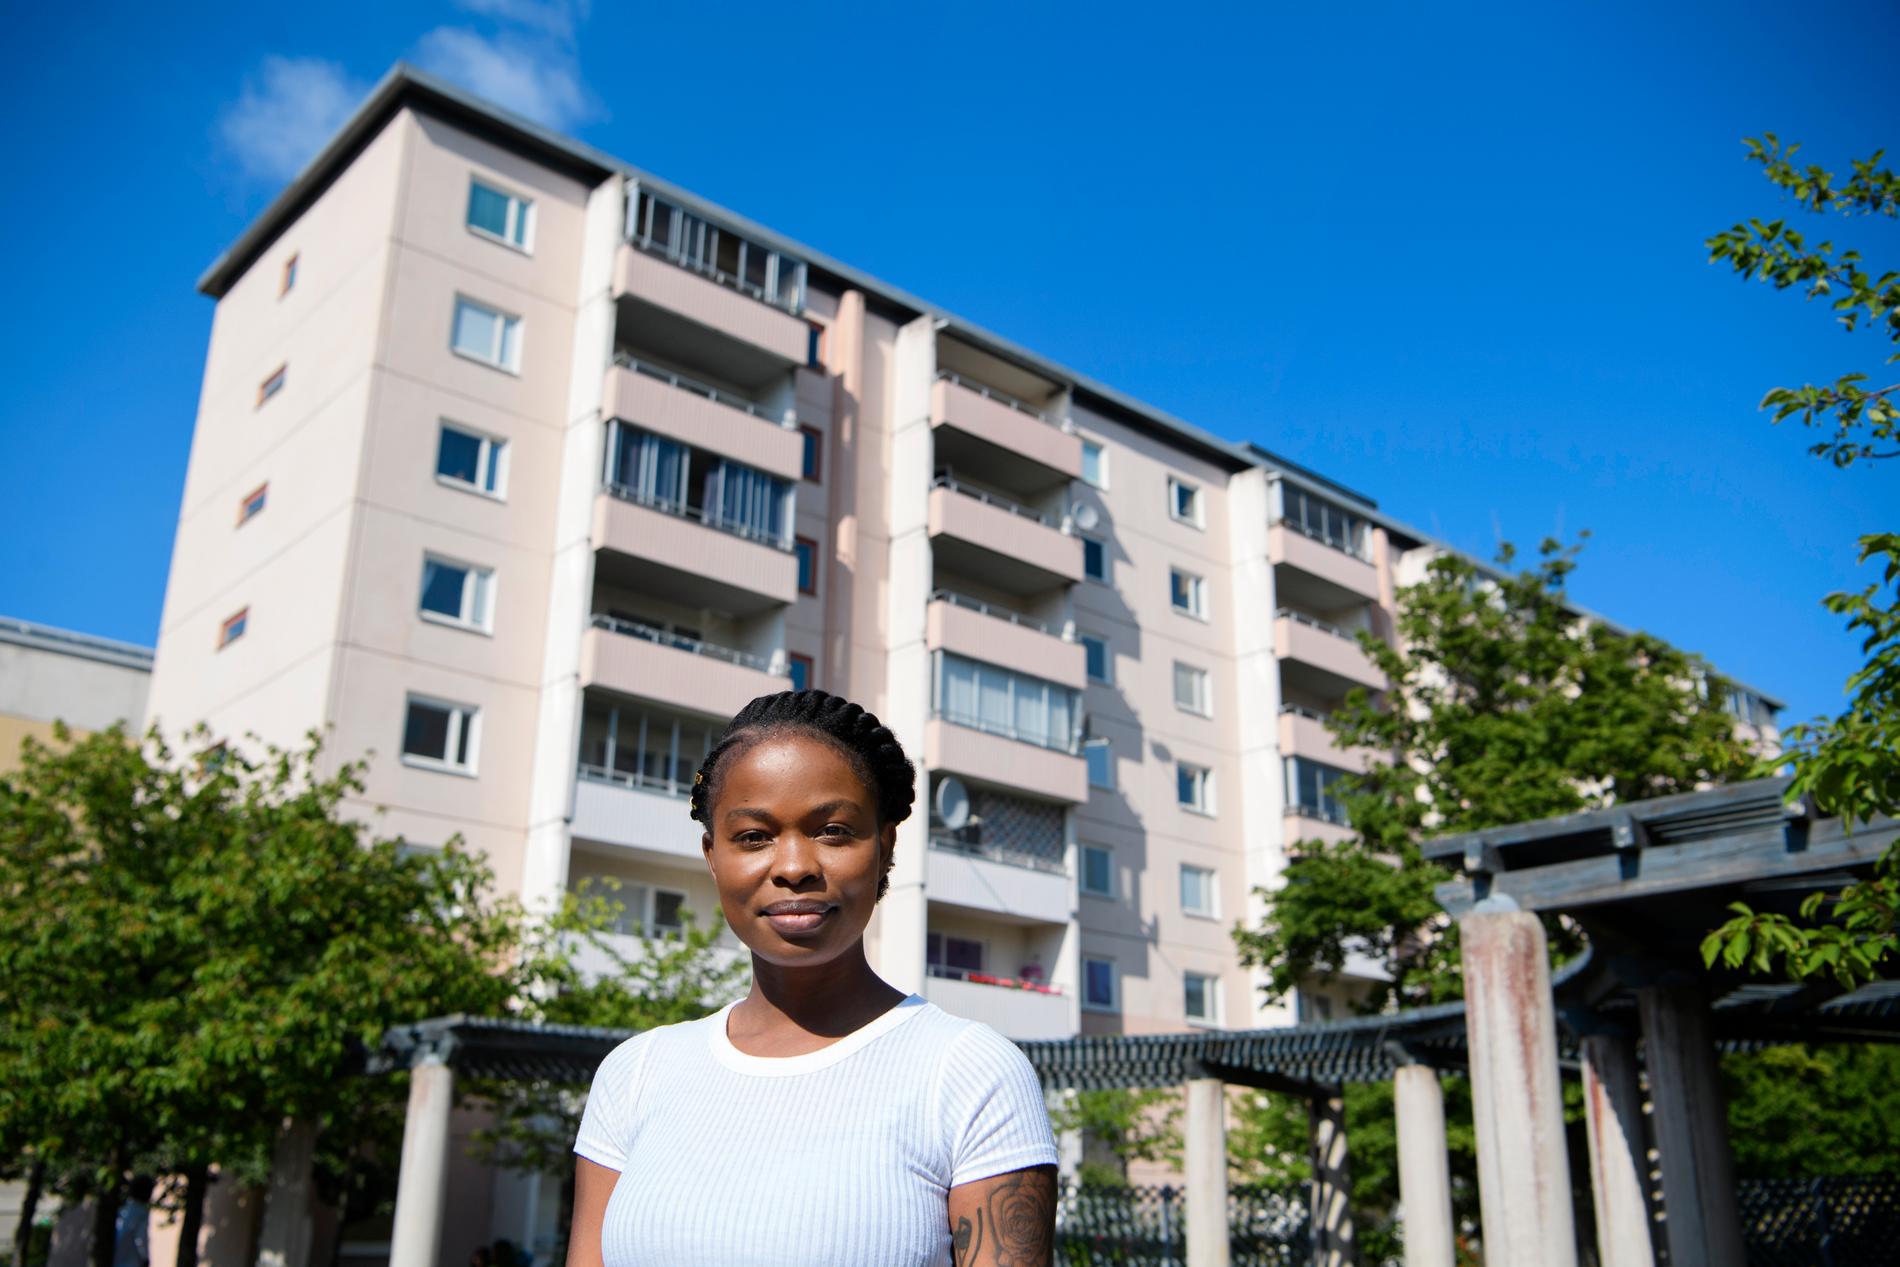 "Integrationen blir svår på grund av segregationen", säger Hallex Berry i Norsborg.